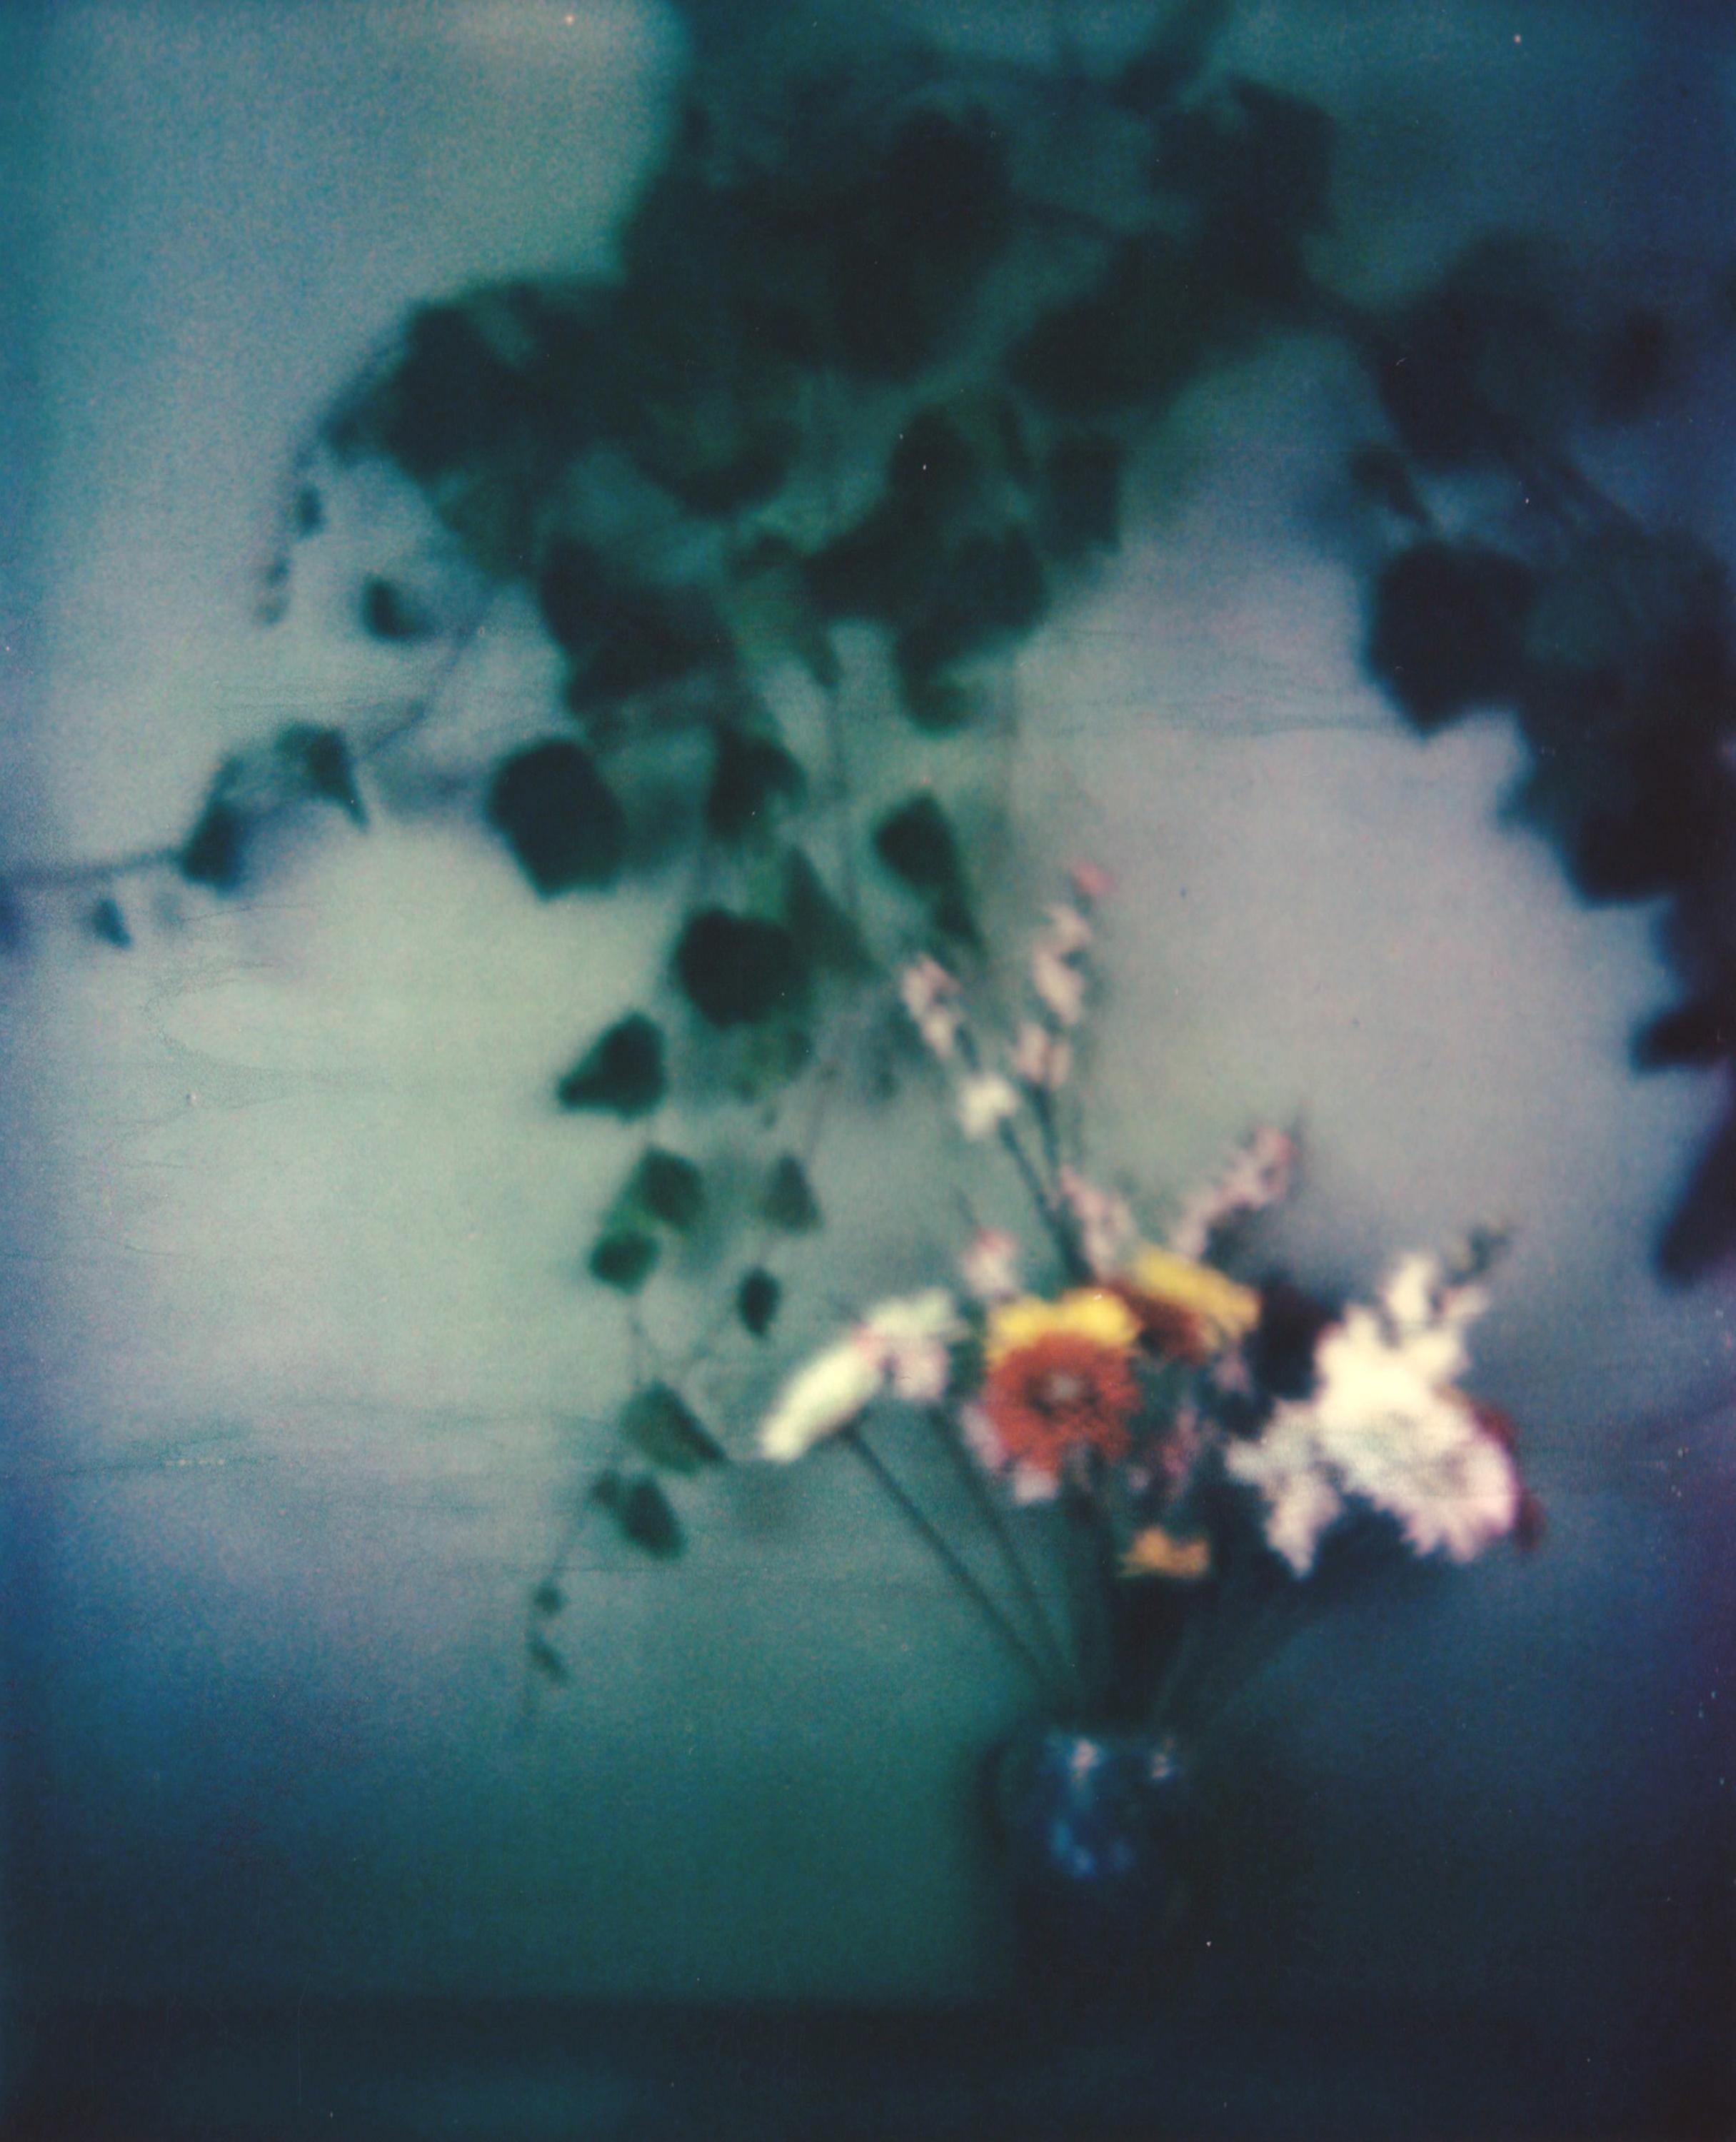 Lisa Toboz Figurative Photograph – In Bloom - Zeitgenössisch, figürlich, Frau, Polaroid, Fotografie, 21. Jahrhundert